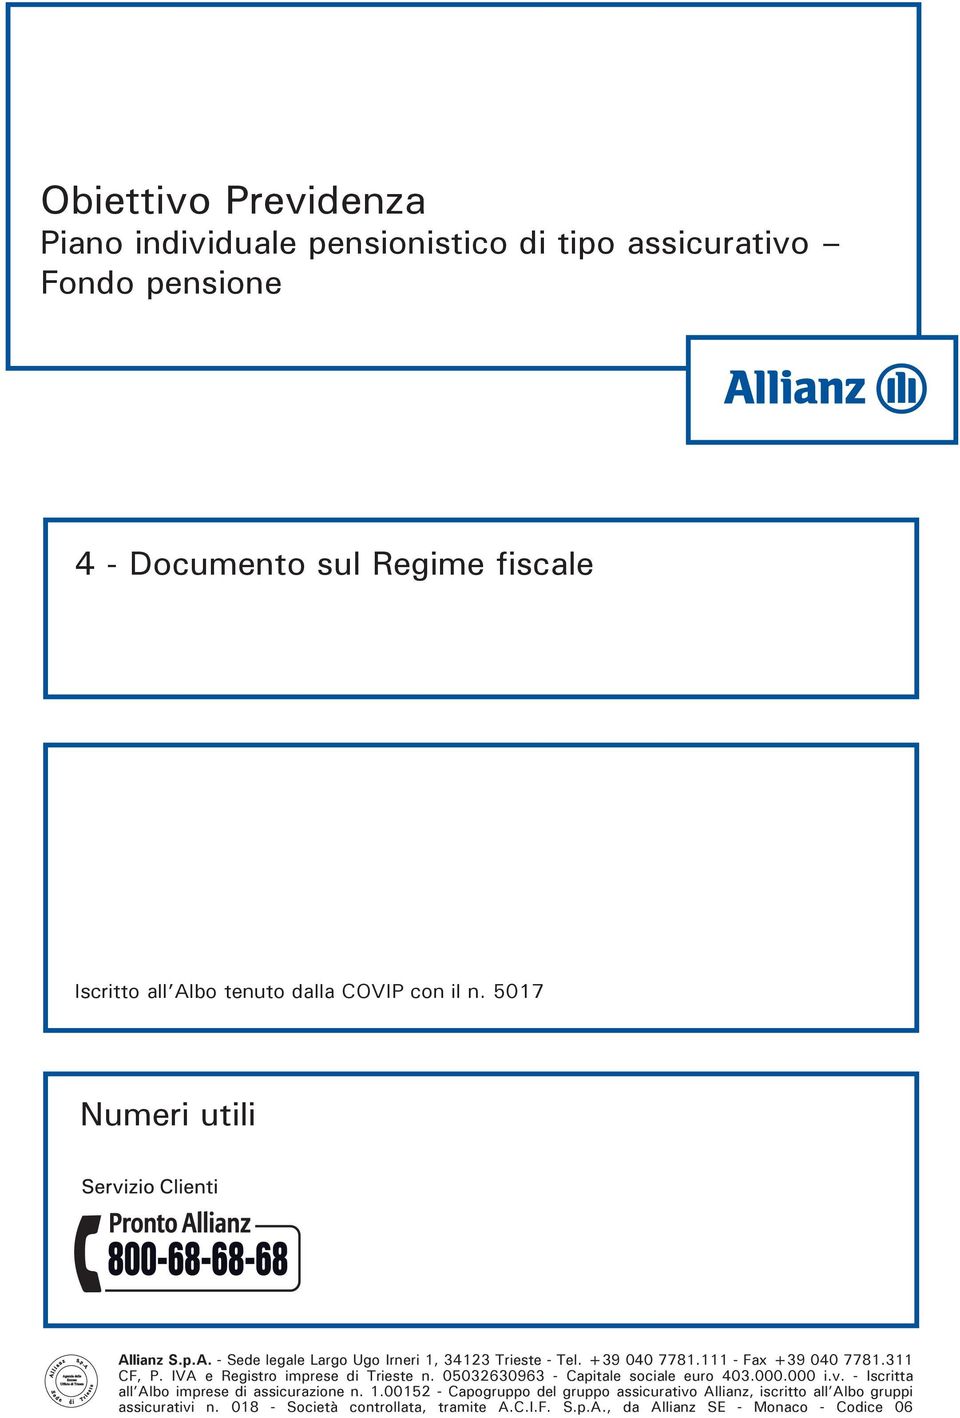 IVA e Registro imprese di Trieste n. 05032630963 - Capitale sociale euro 403.000.000 i.v. - Iscritta all Albo imprese di assicurazione n. 1.